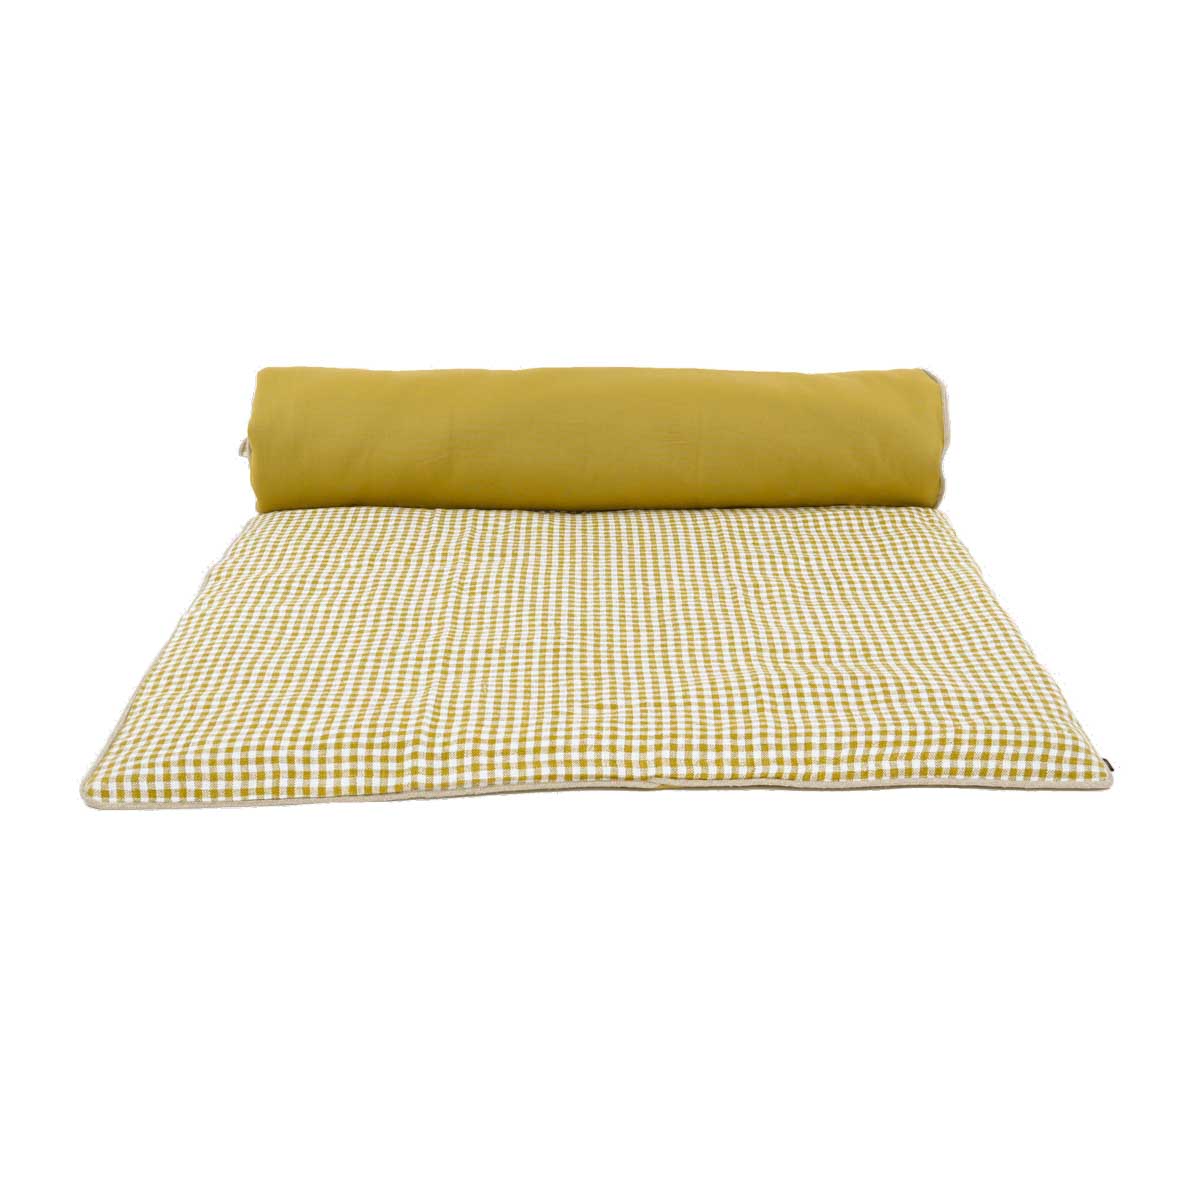 edredon-bout de lit en lin carreaux piana 85x200 cm jaune citrus-harmony haomy